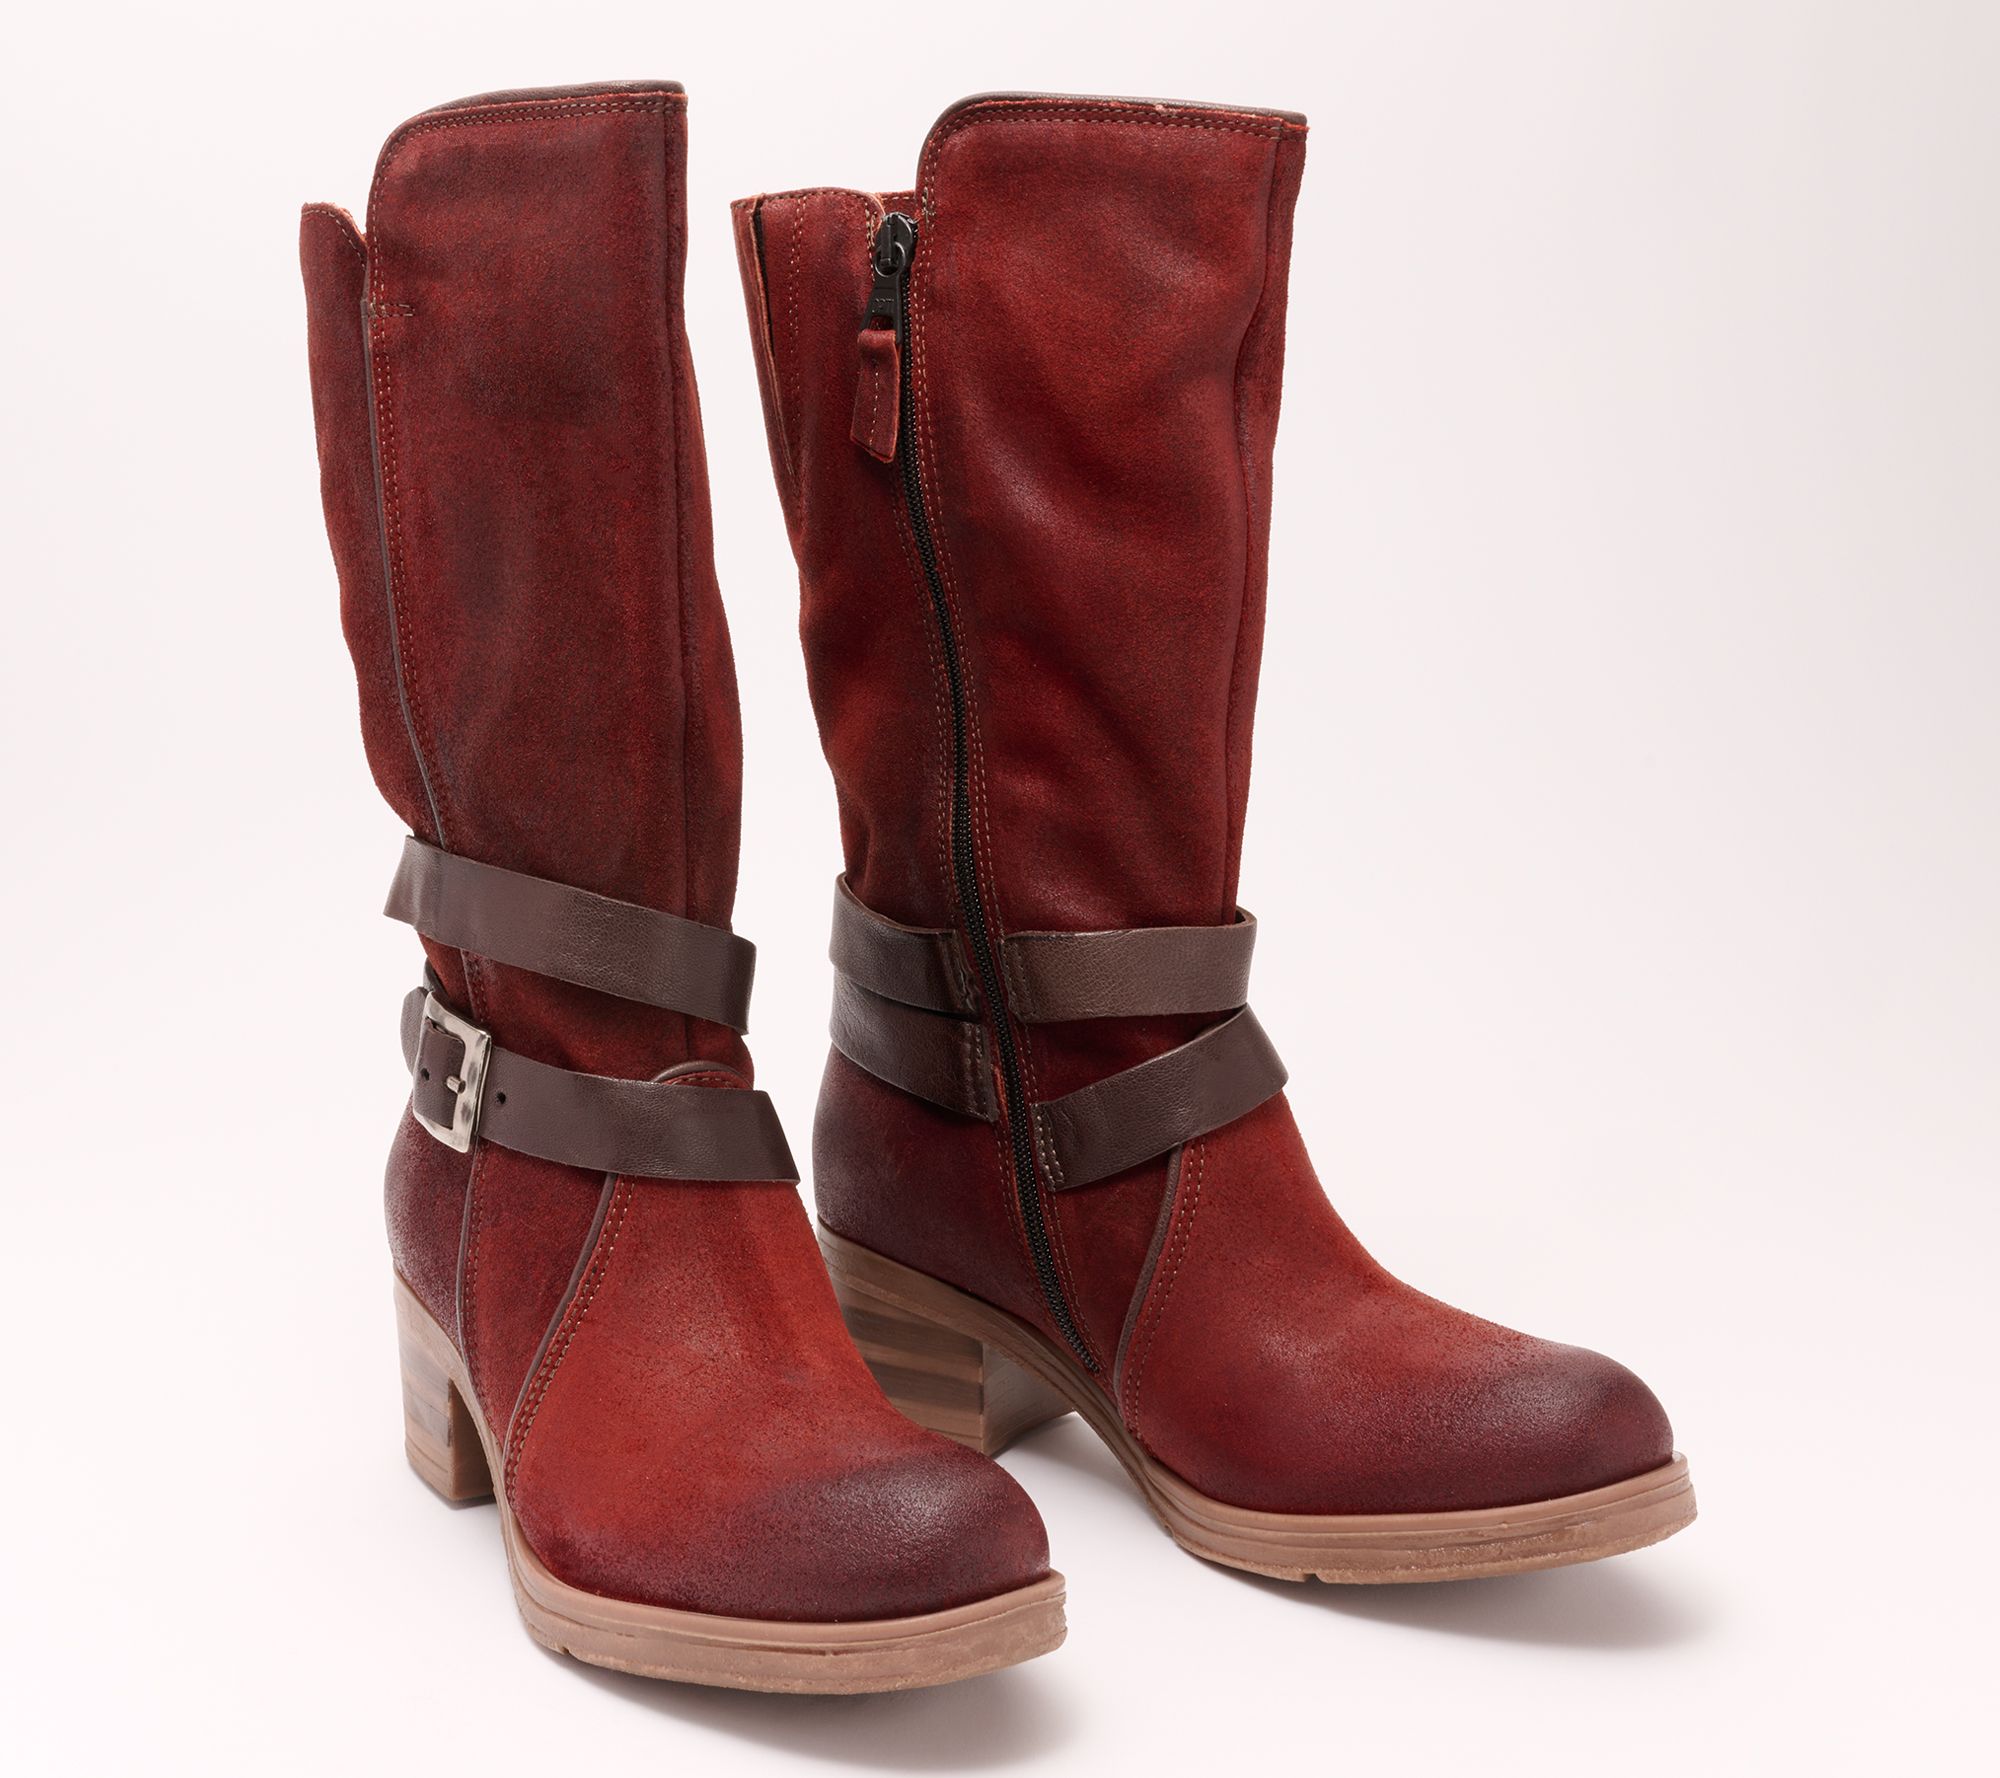 Miz Mooz Leather Mid Boots - Sunrise - QVC.com